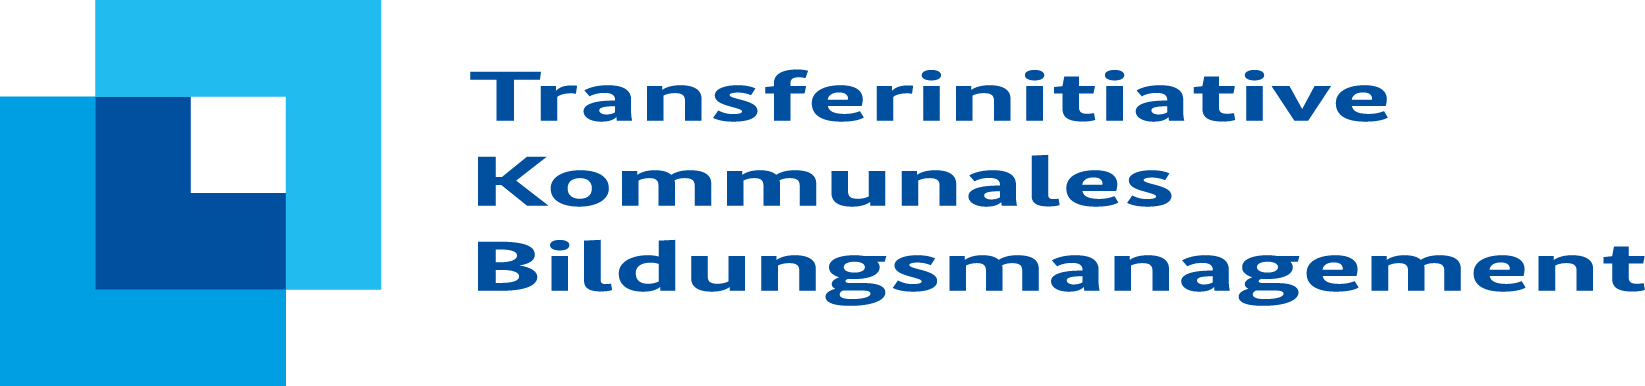 alt="Logo Transferinitiative Kommunales Bildungsmanagement"